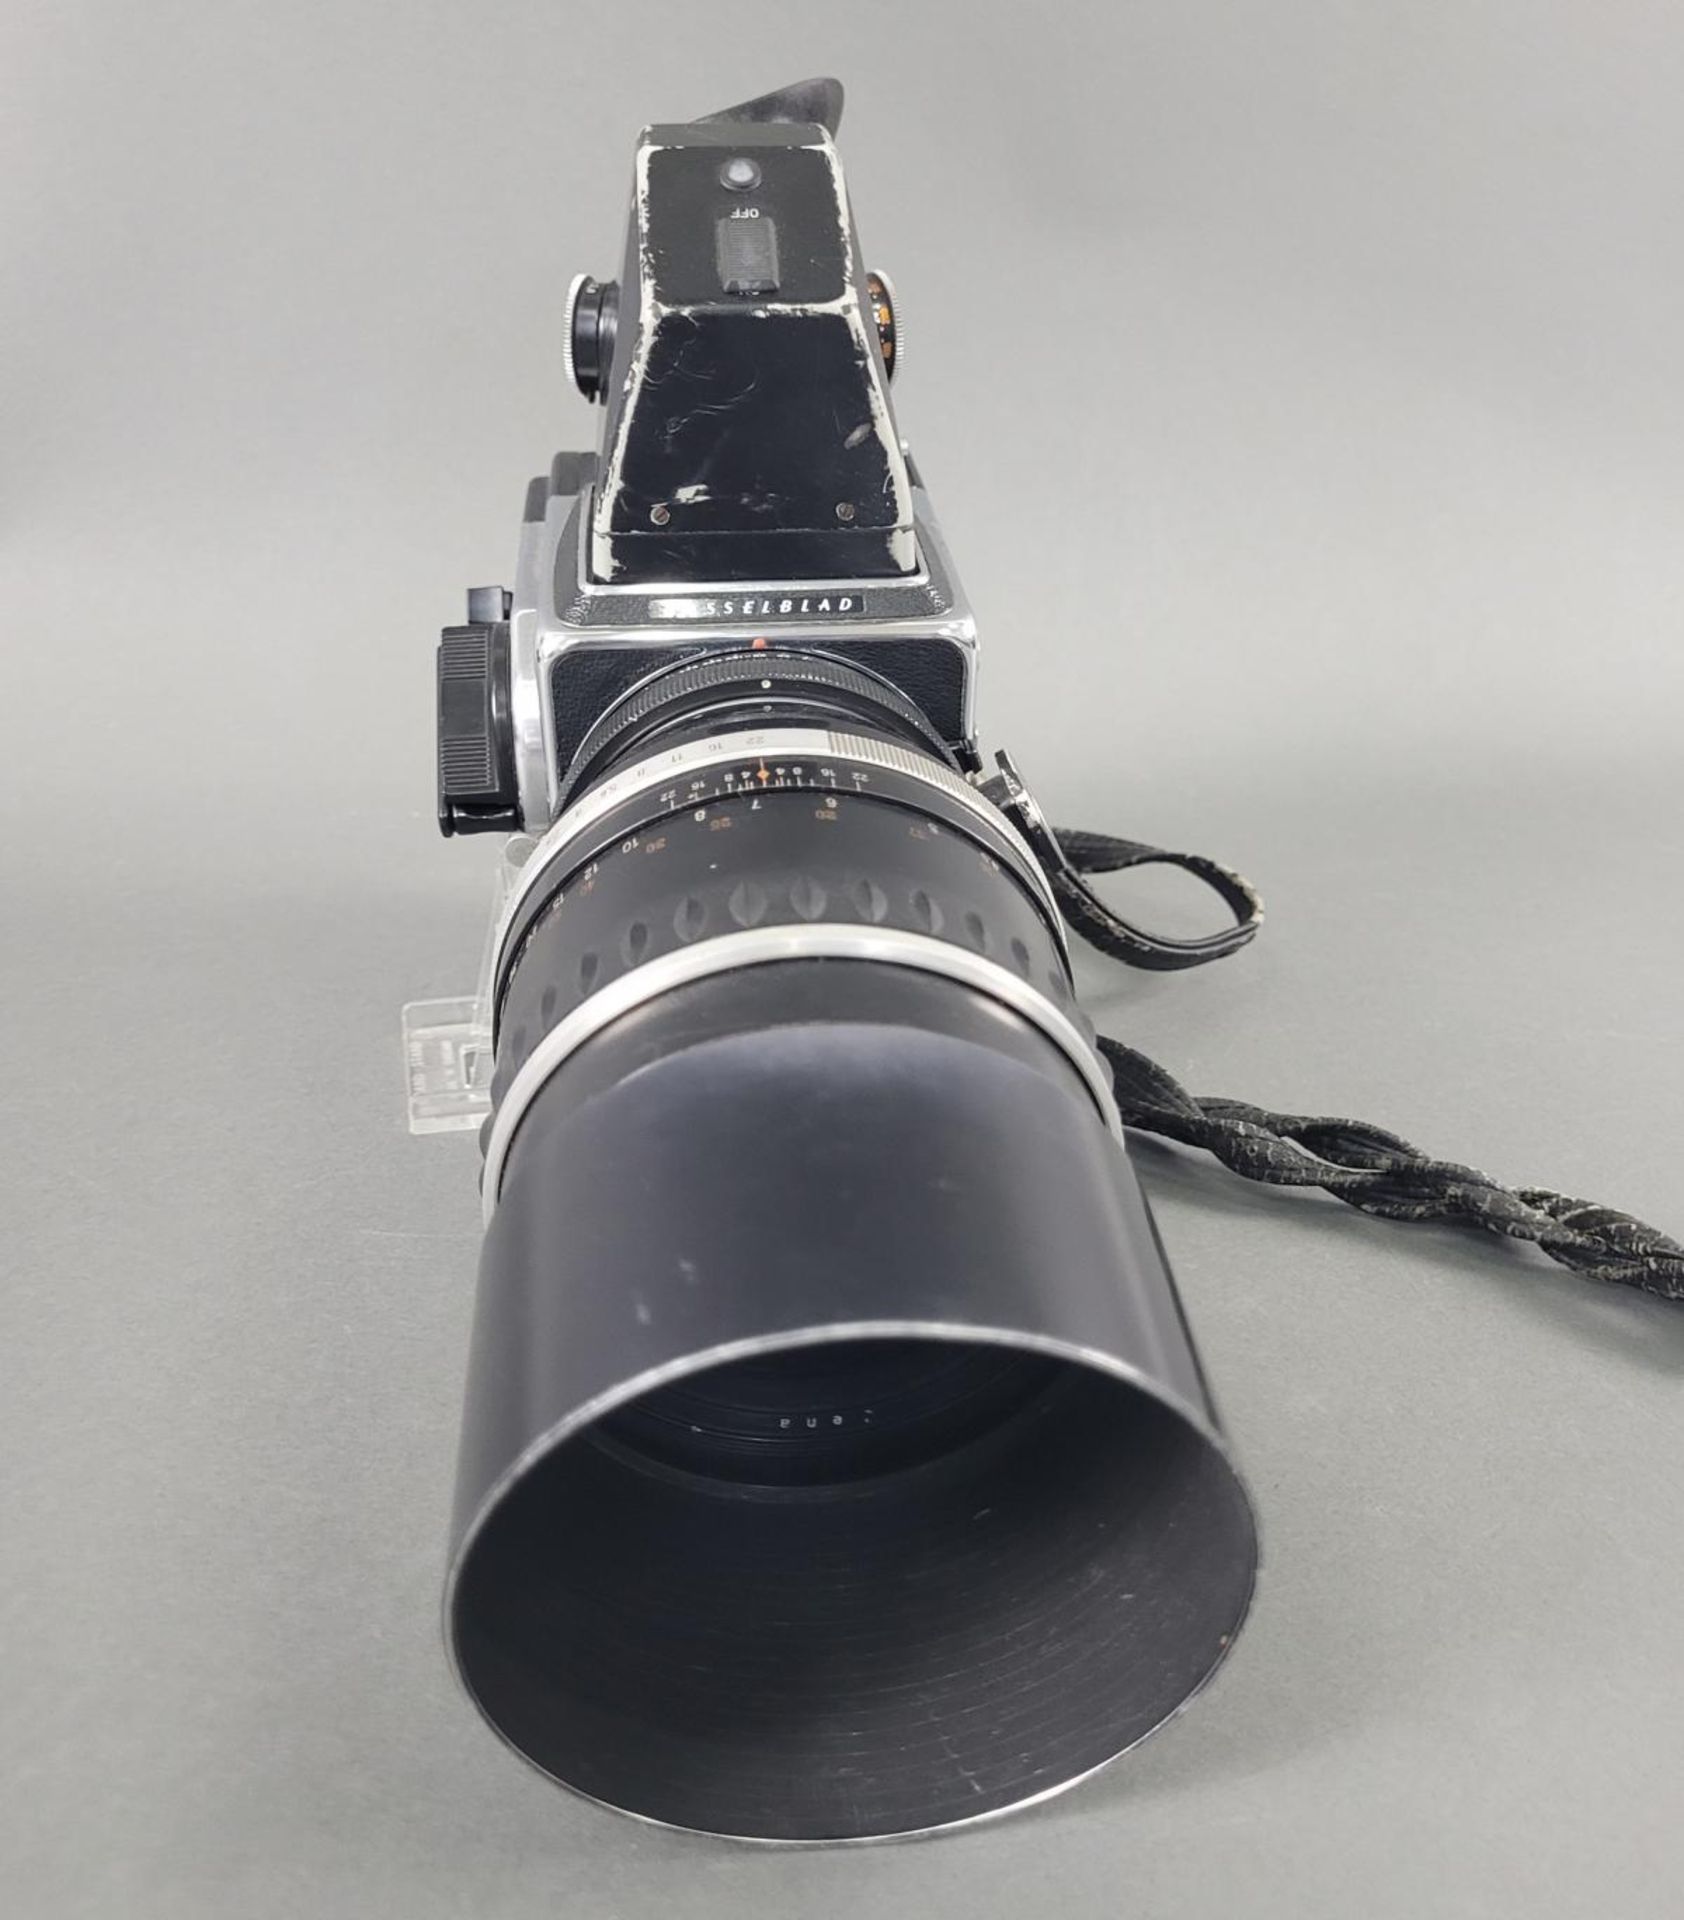 Hasselblad 2000 FC Kamera mit Objektiv S 1:2,8 f=180